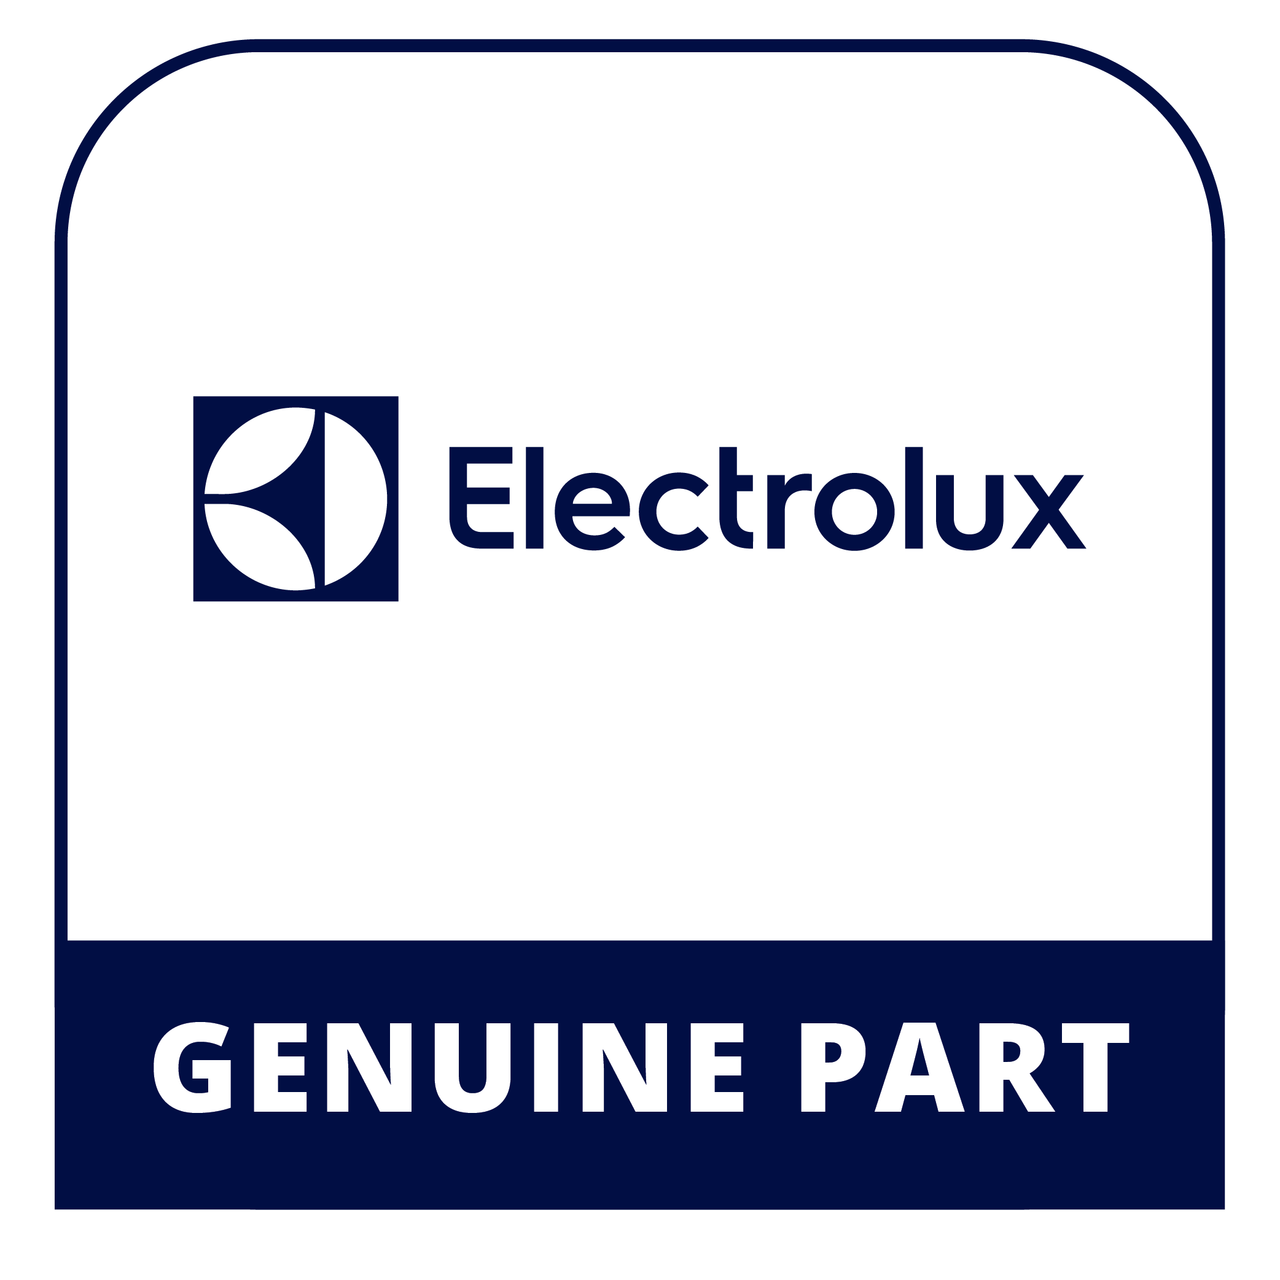 Frigidaire - Electrolux 5304455650 - Screw - Genuine Electrolux Part